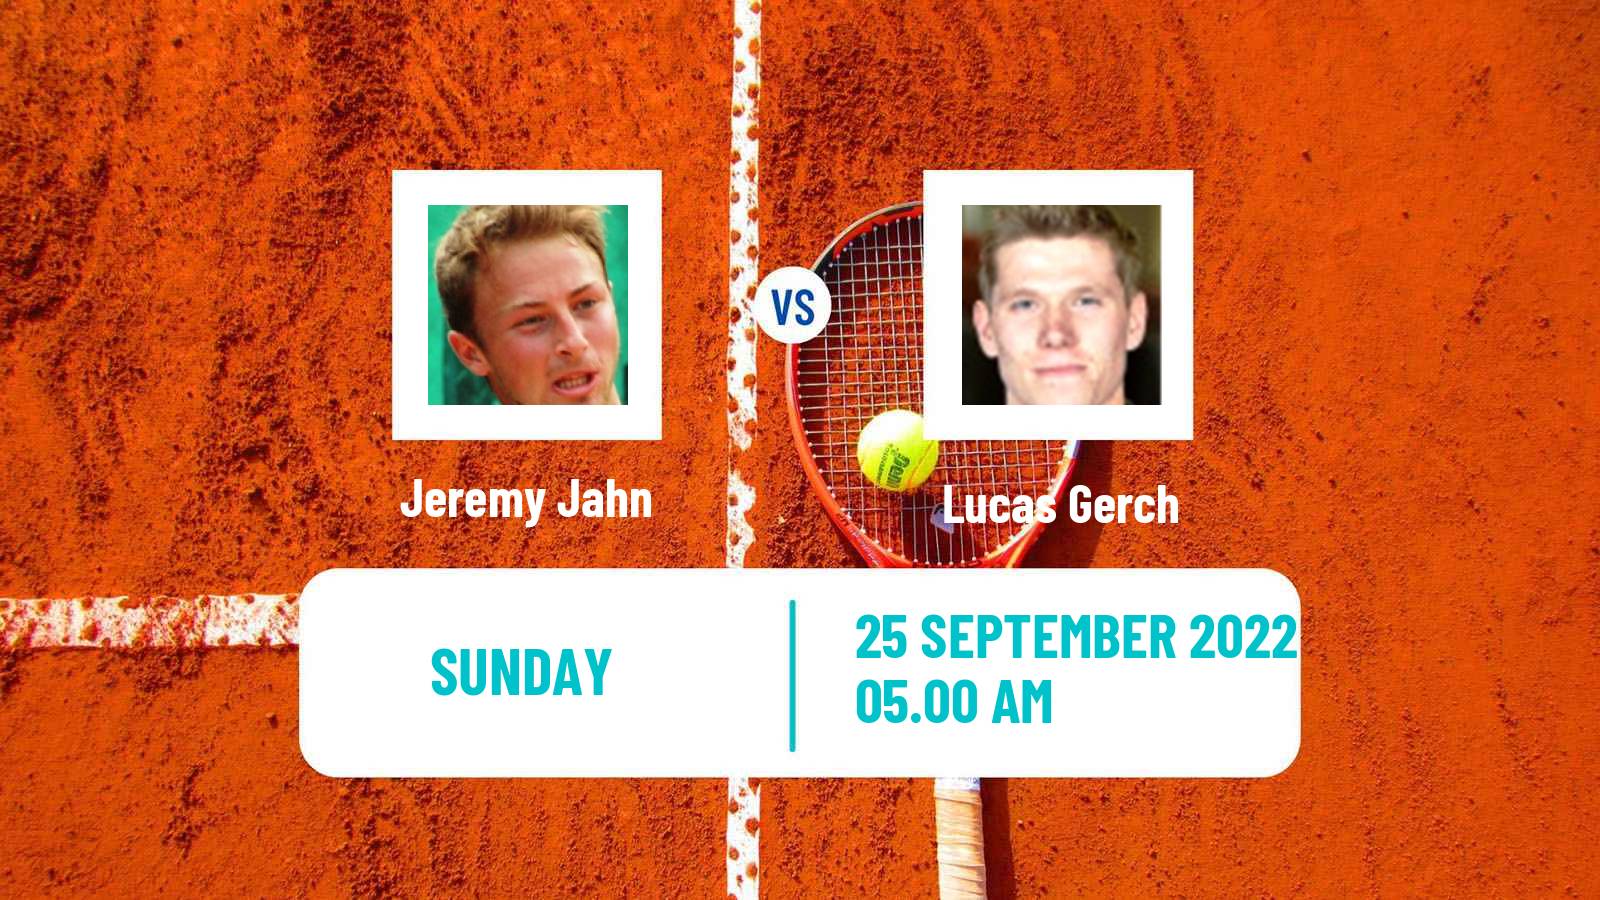 Tennis ATP Challenger Jeremy Jahn - Lucas Gerch